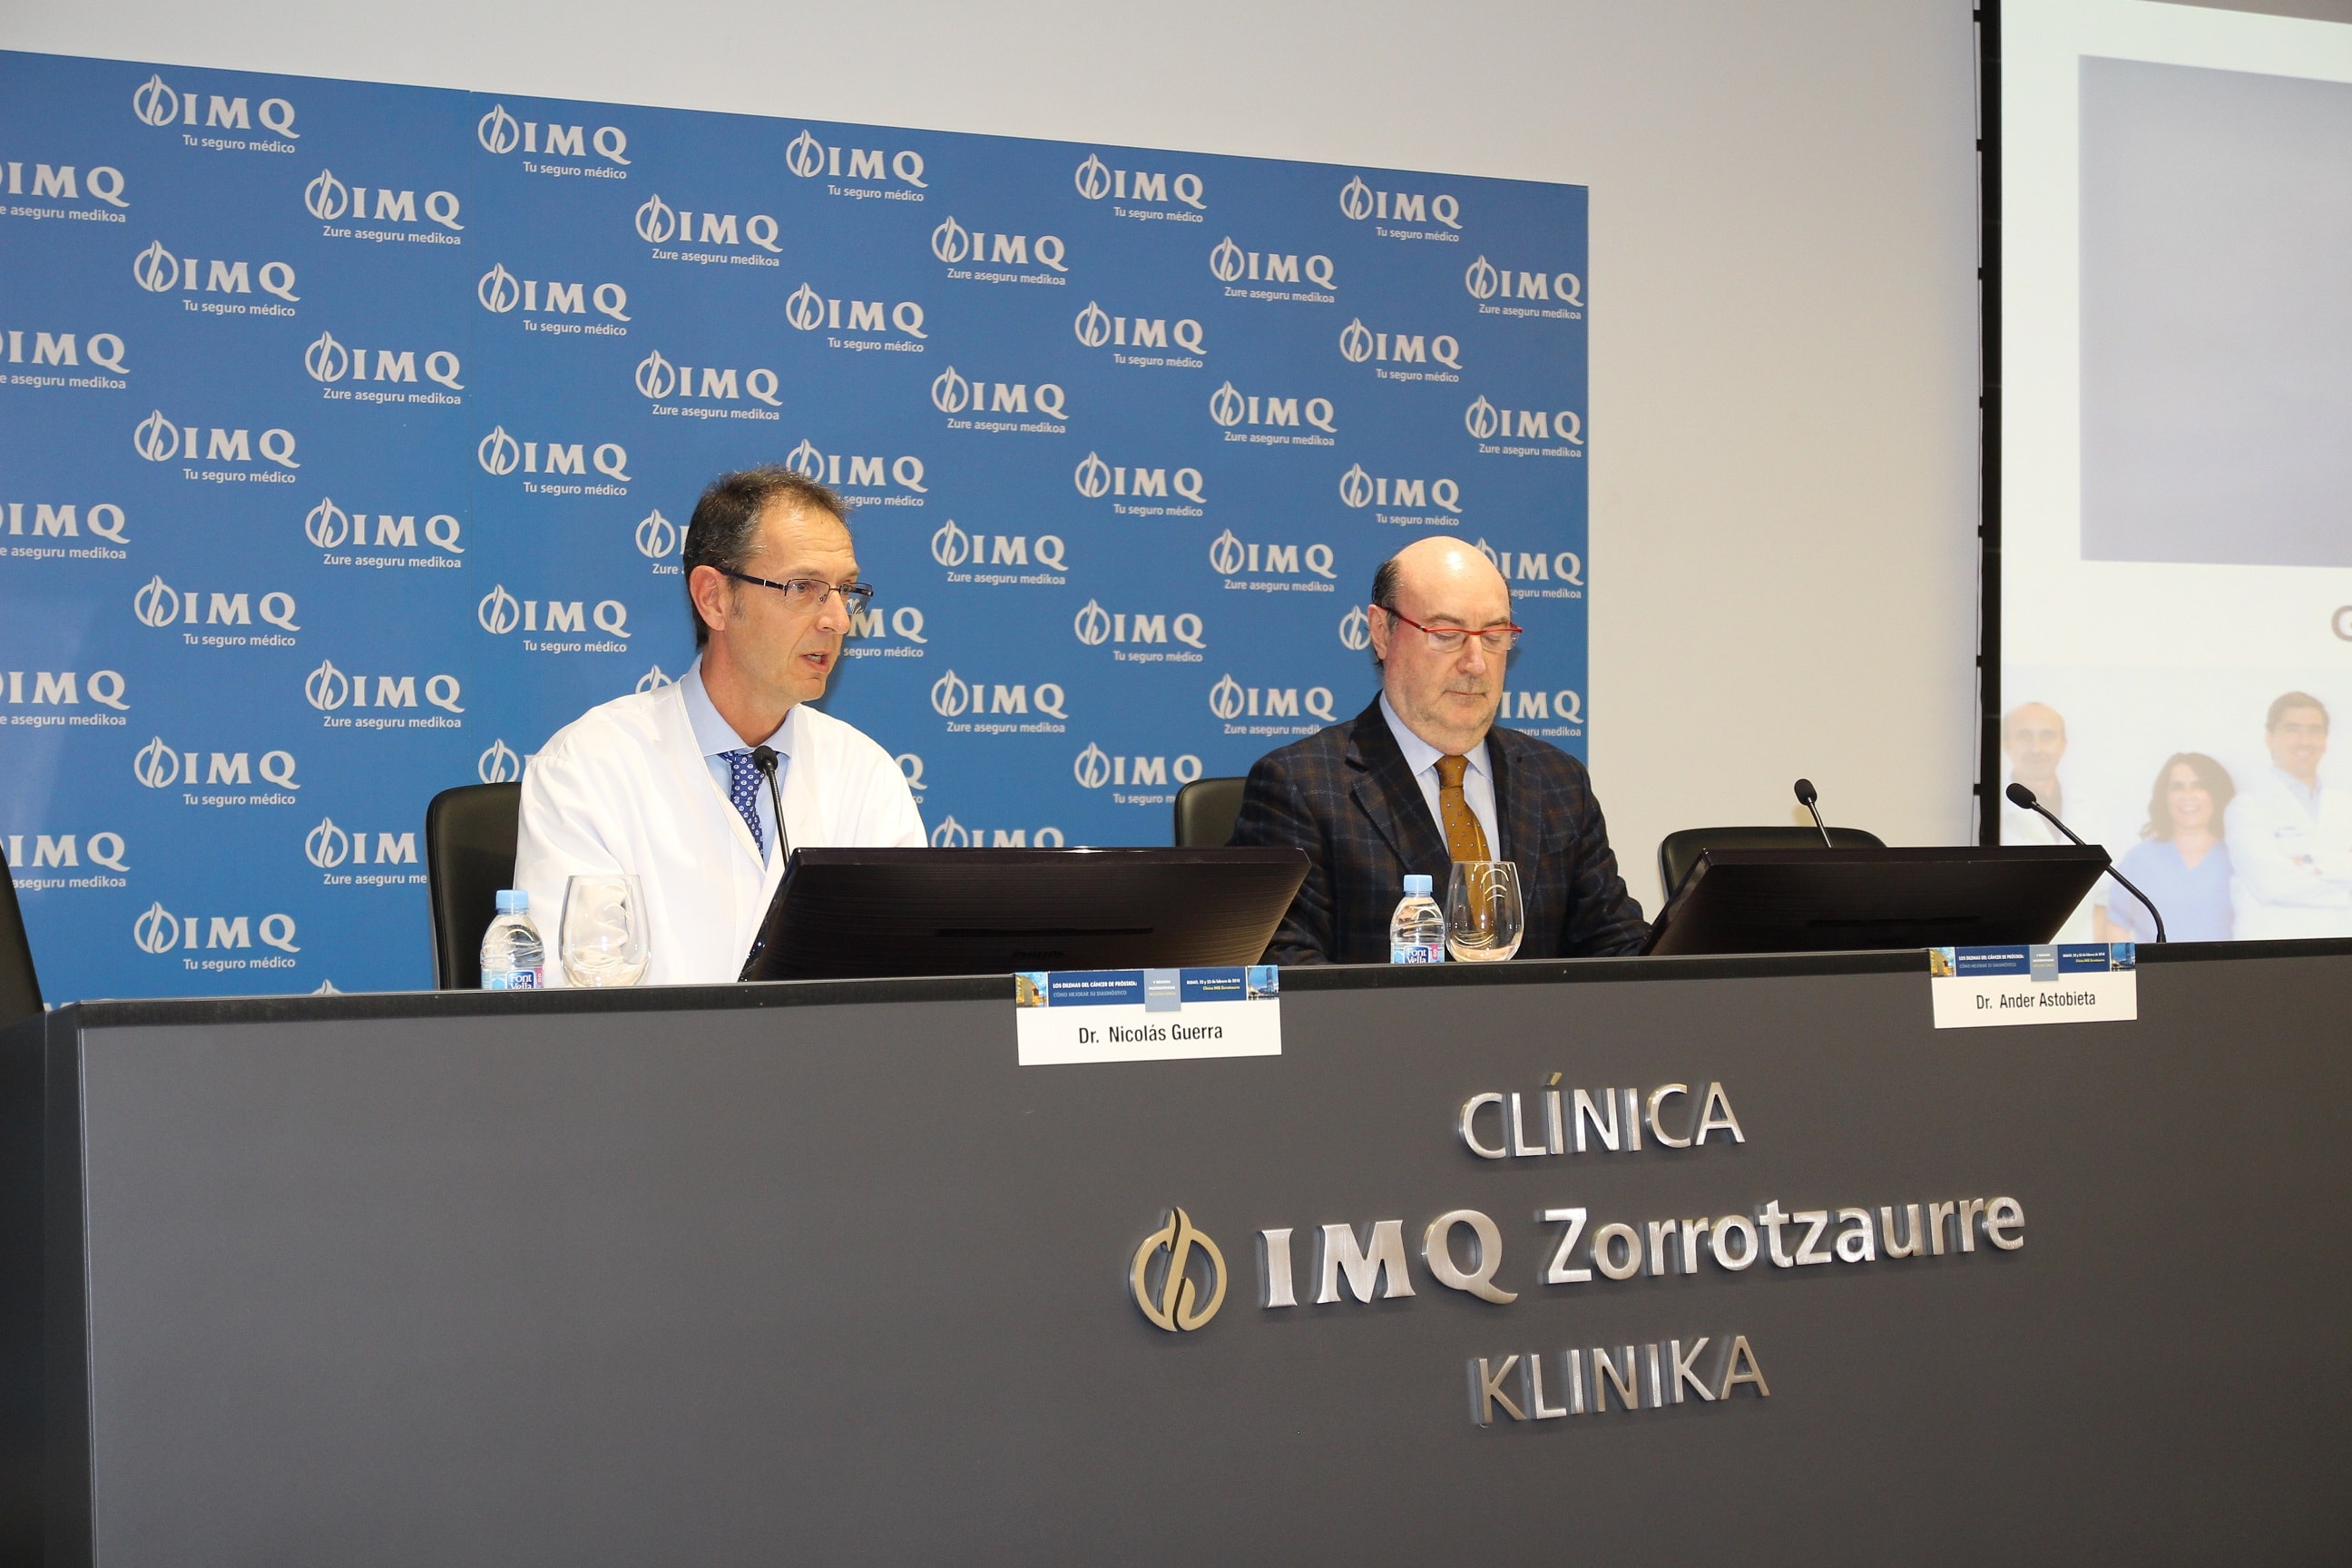 La clínica IMQ Zorrotzaurre, primera en Europa en emplear ecografía en alta resolución frente al cáncer de próstata